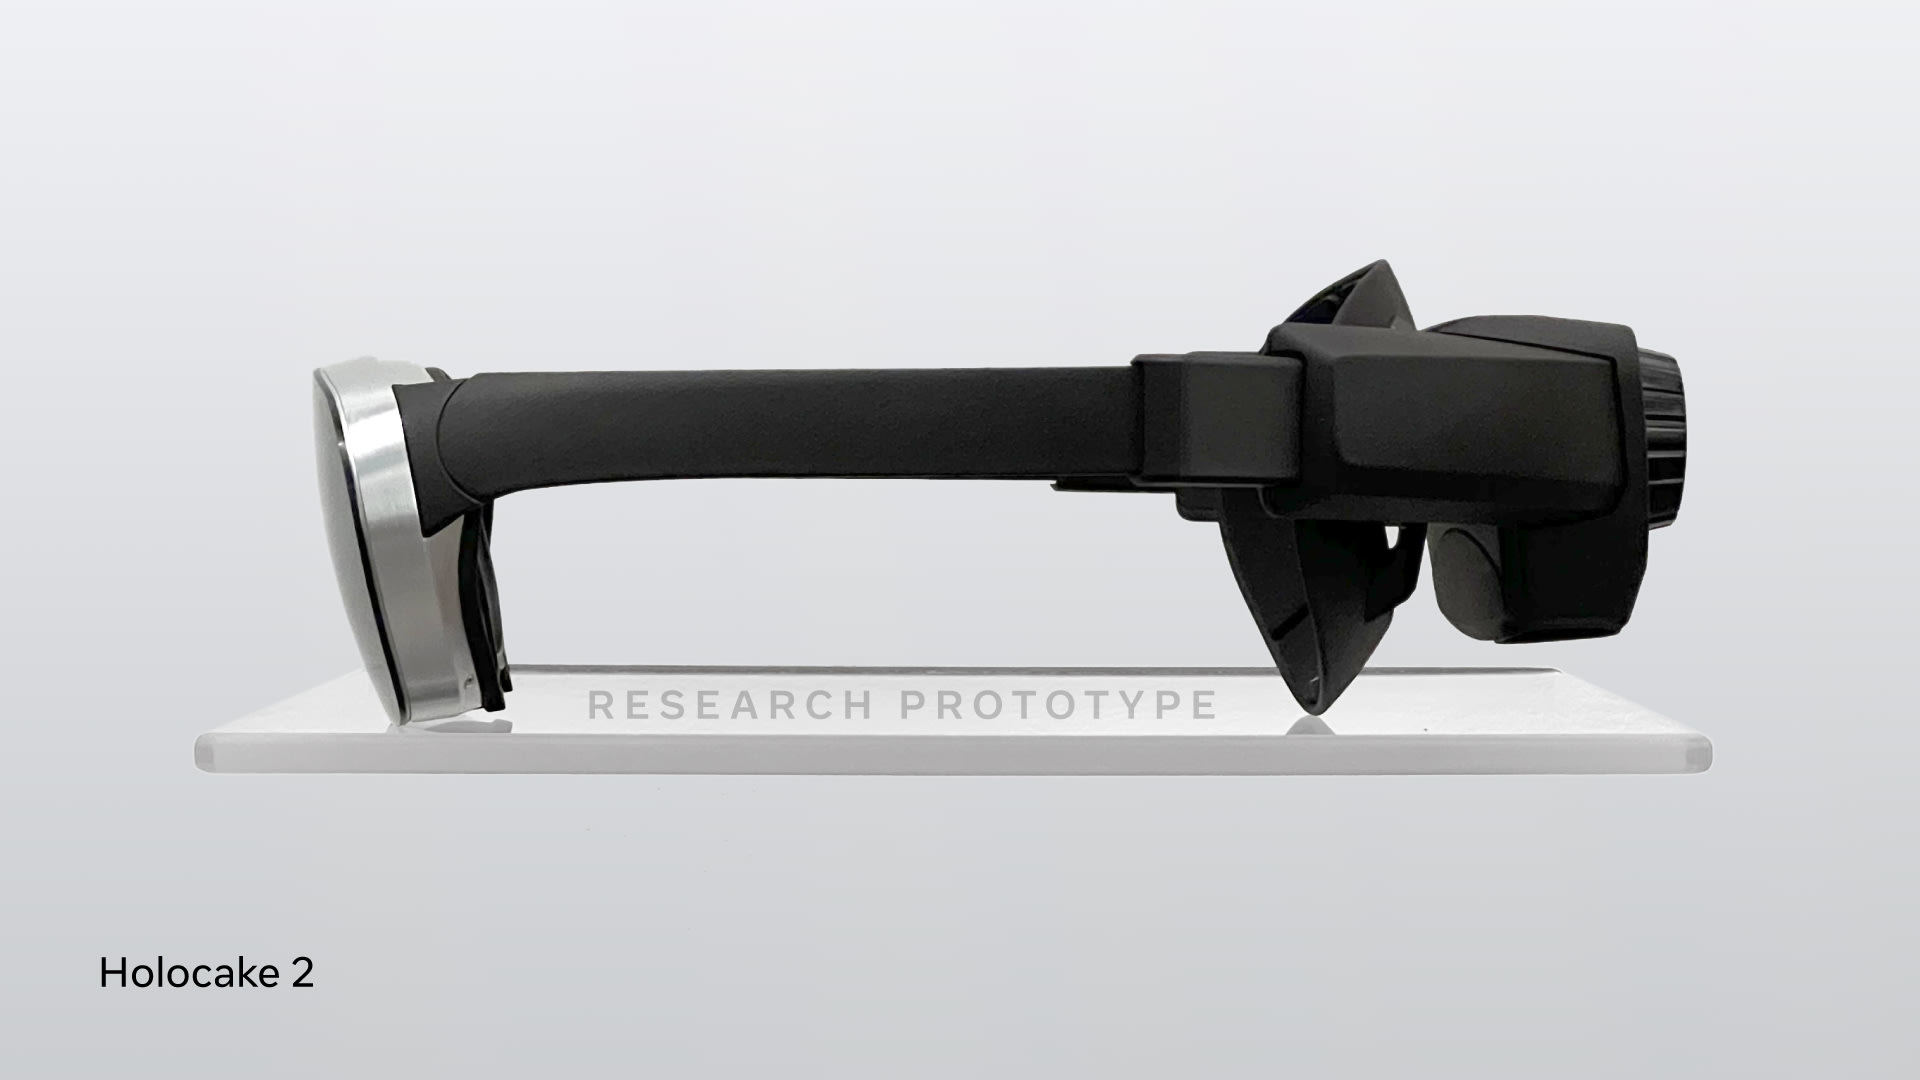 Spojením všech zkoumaných technologií jsou VR brýle Holocake 2. K dokonalosti ale mají stále daleko. 